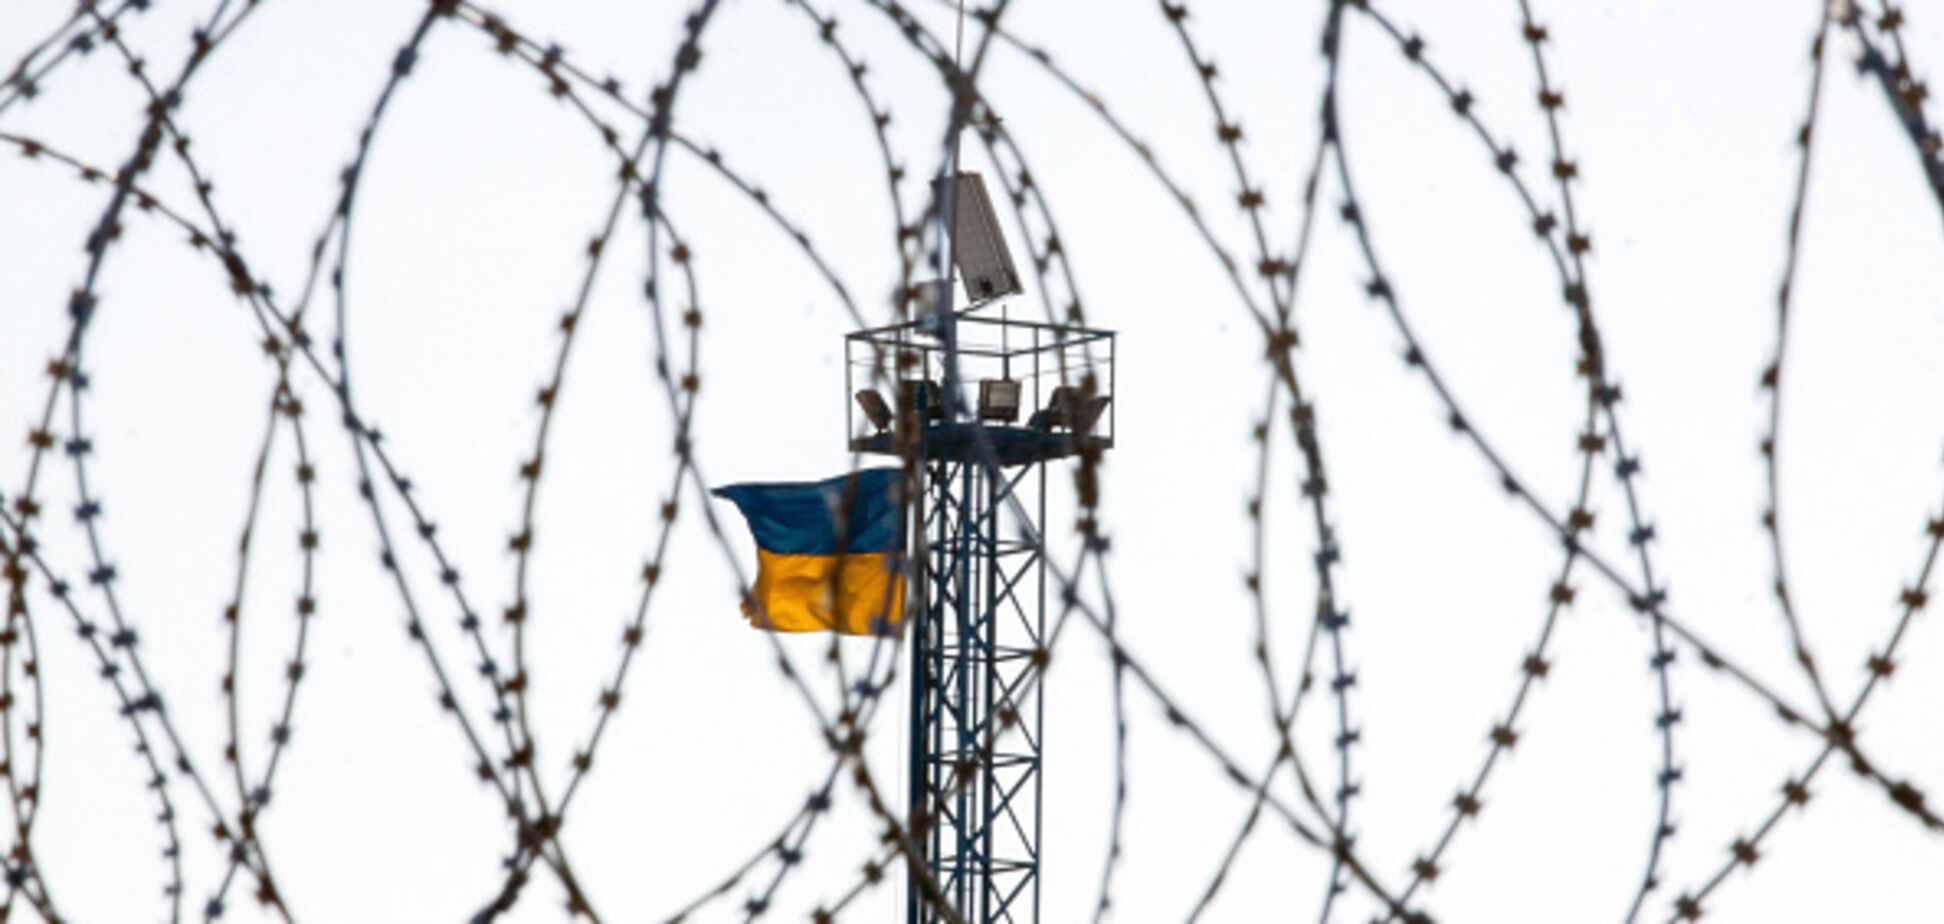 Слепой, но не всегда: впервые в Украине пожизненно осужденный вышел на свободу